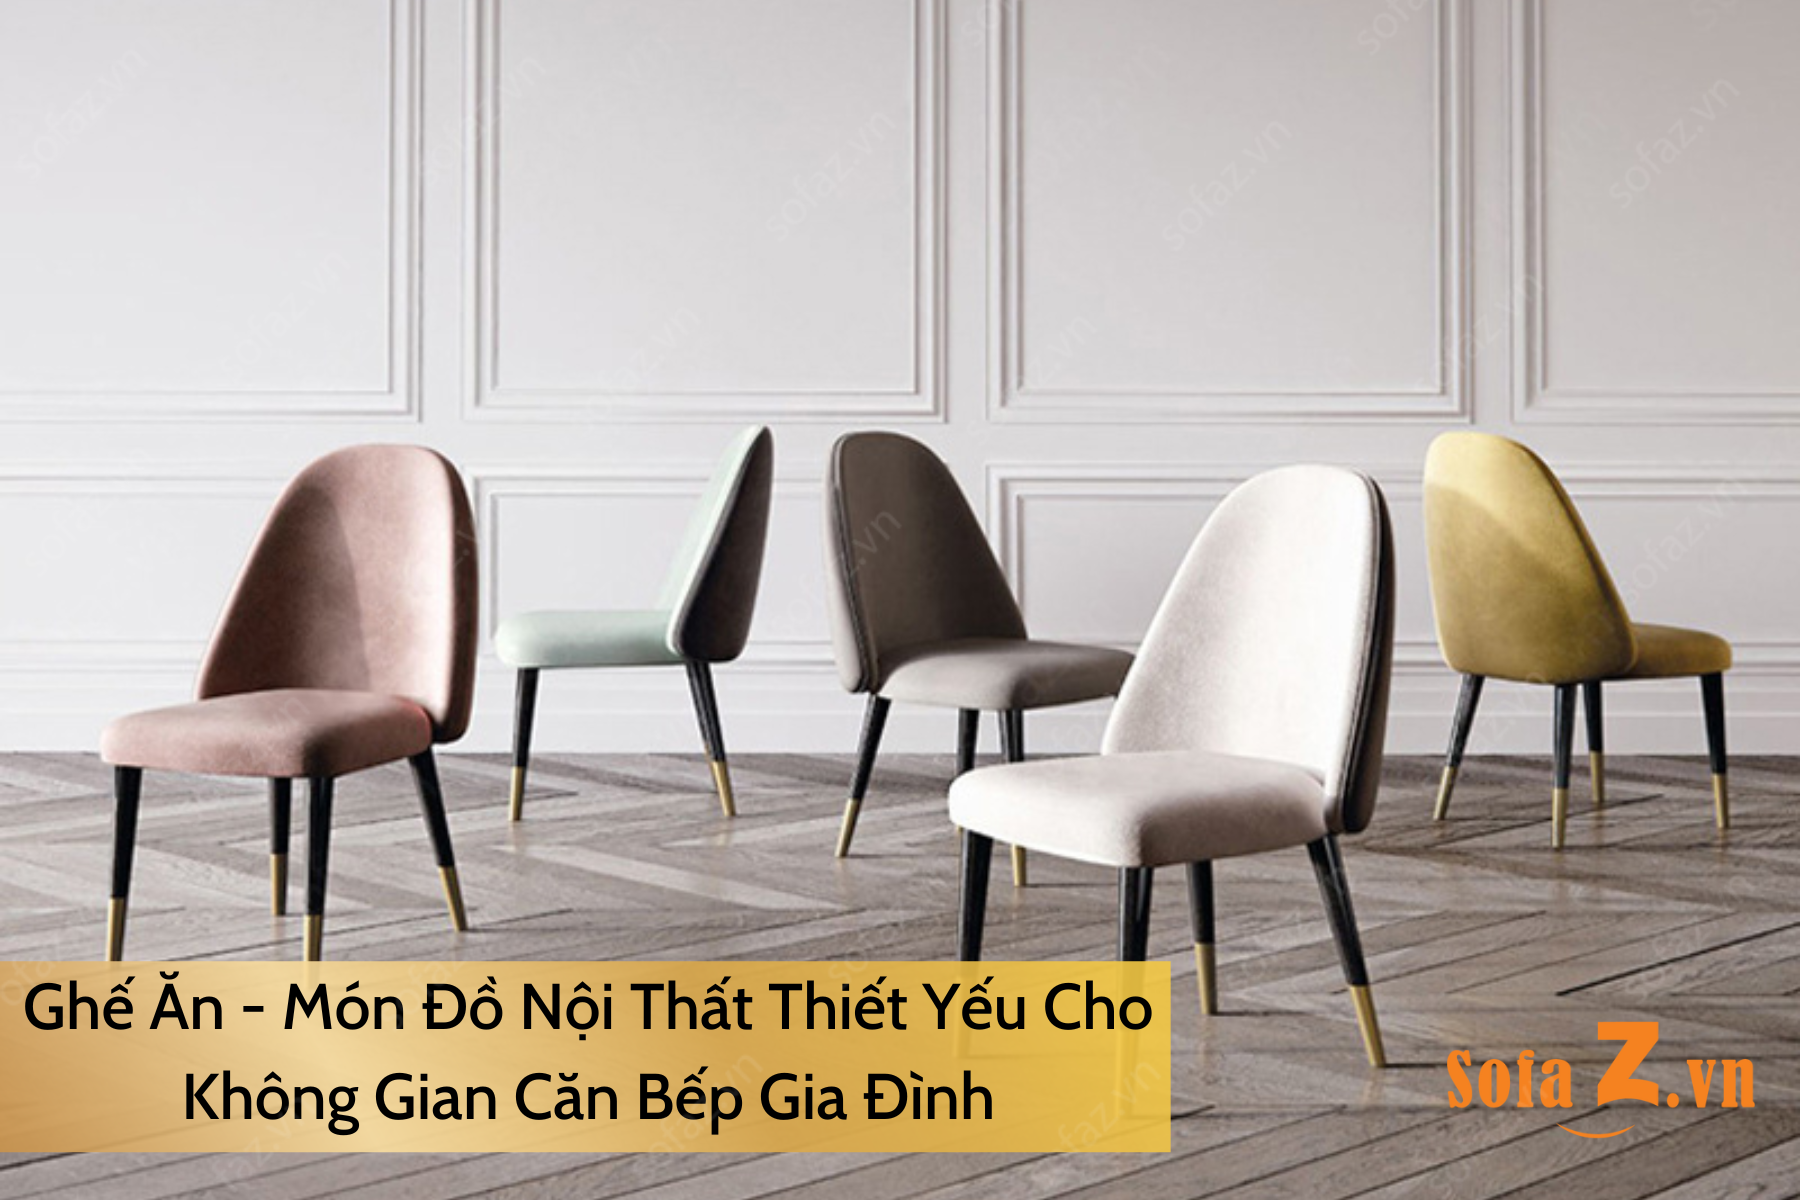 ghe-an-mon-do-noi-that-thiet-yeu-cho-khong-gian-can-bep-gia-dinh.html